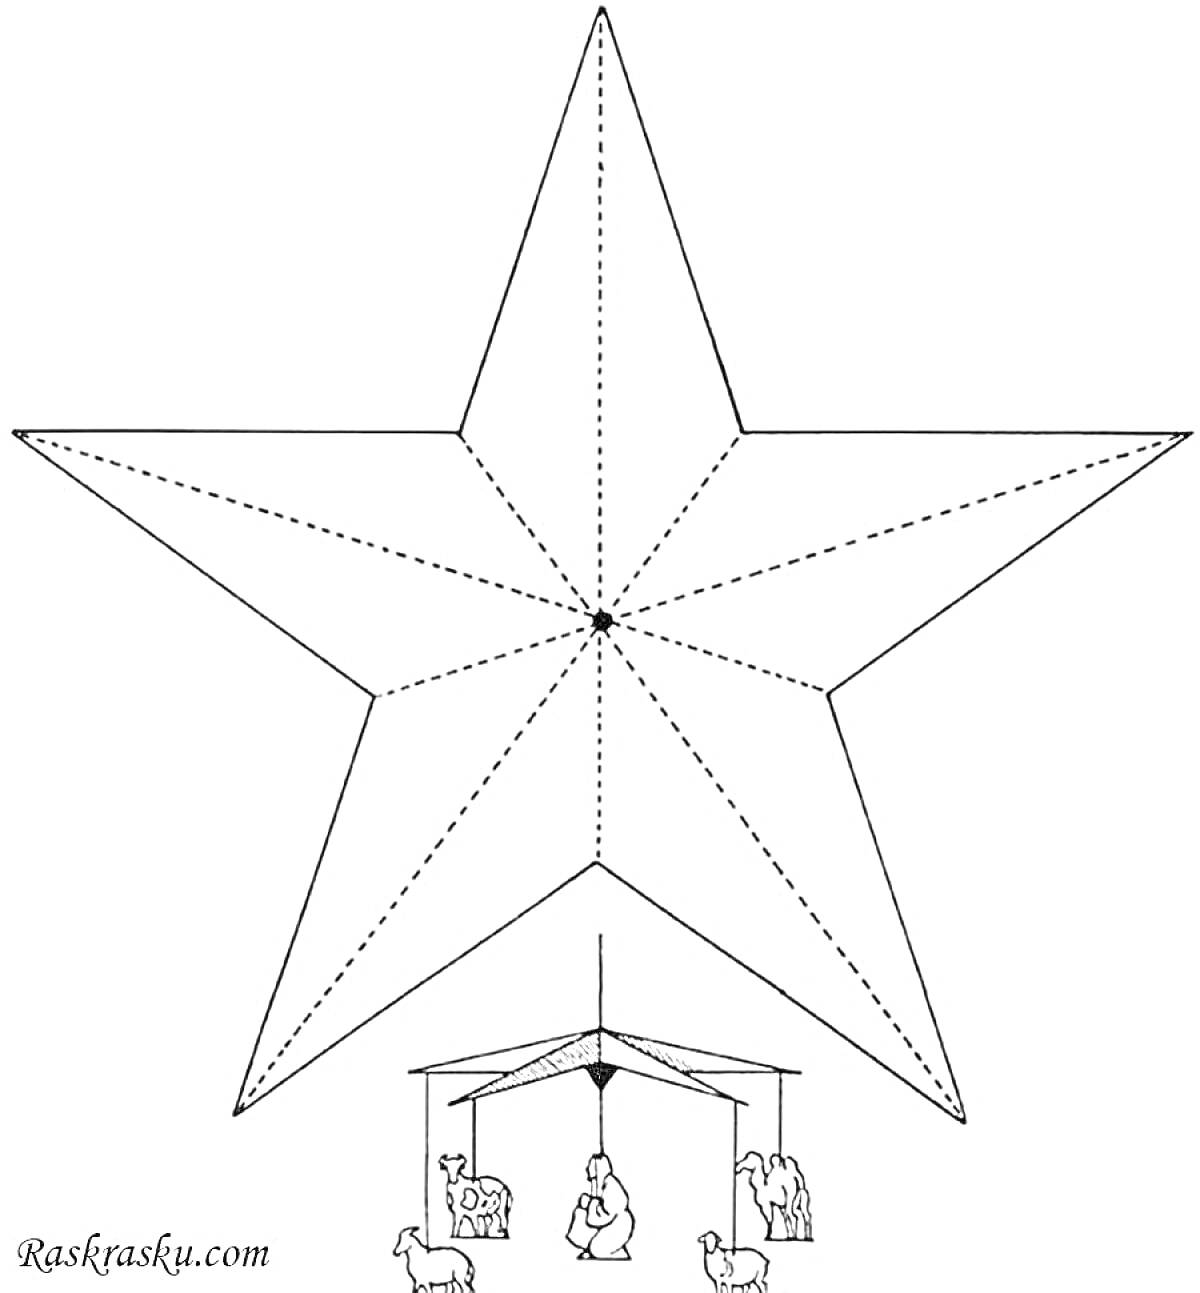 Звезда Рождественская с изображением сцены Рождества Христова под ней (ясли, младенец, родители, животные)